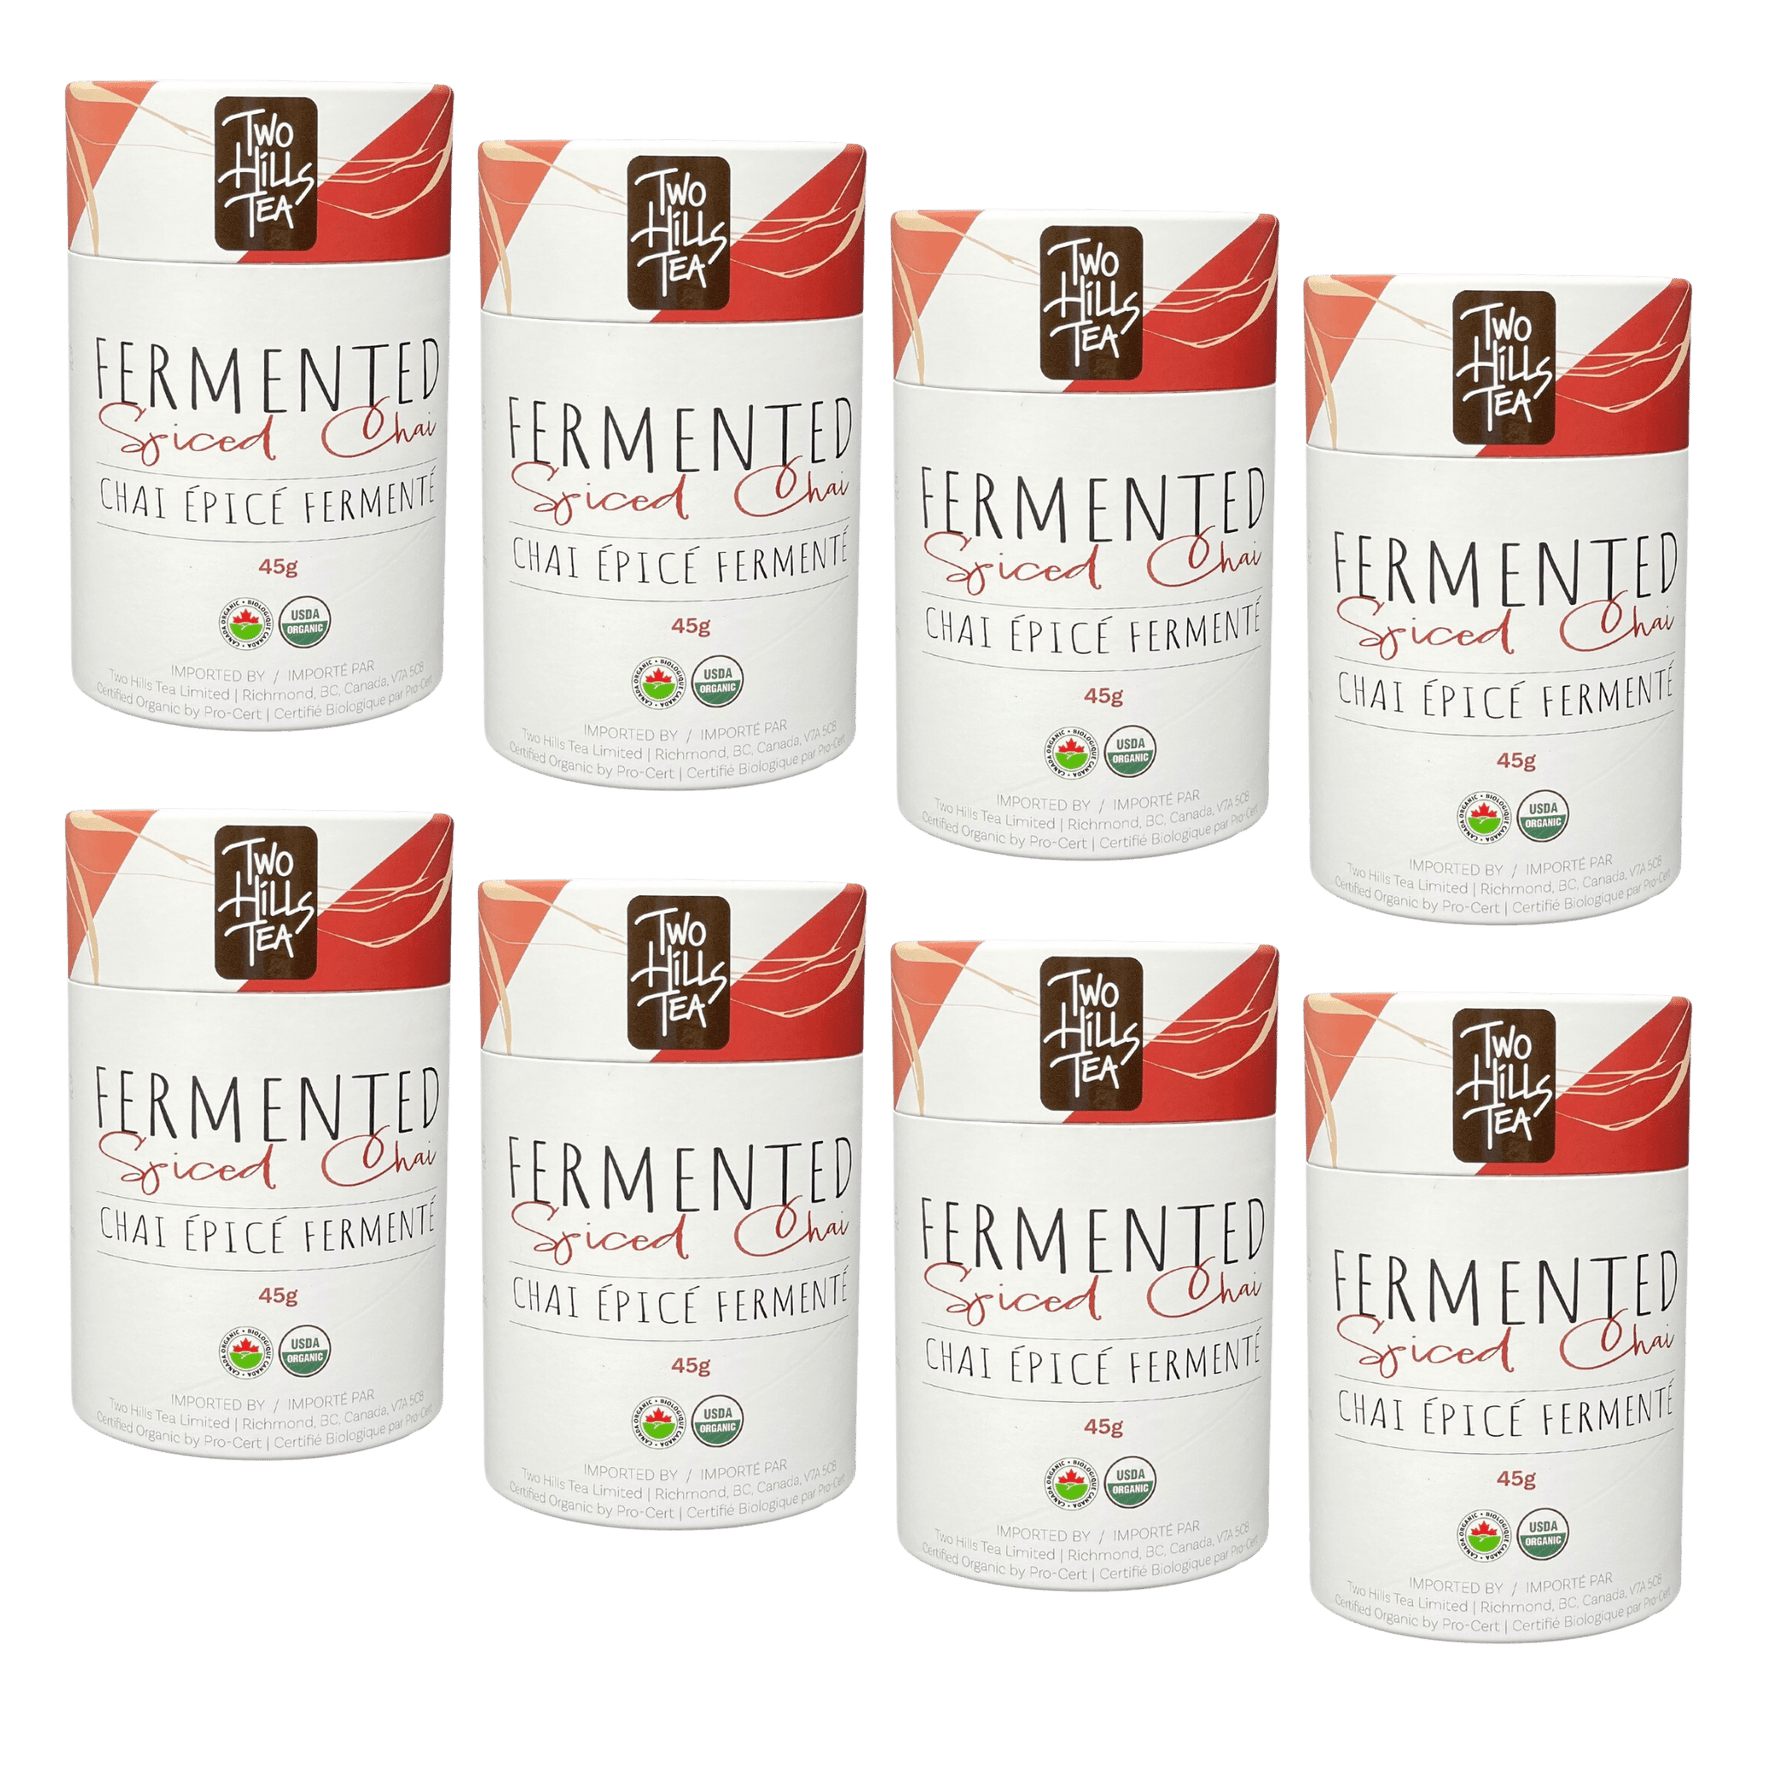 Organic Fermented Spiced Chai - Two Hills Tea